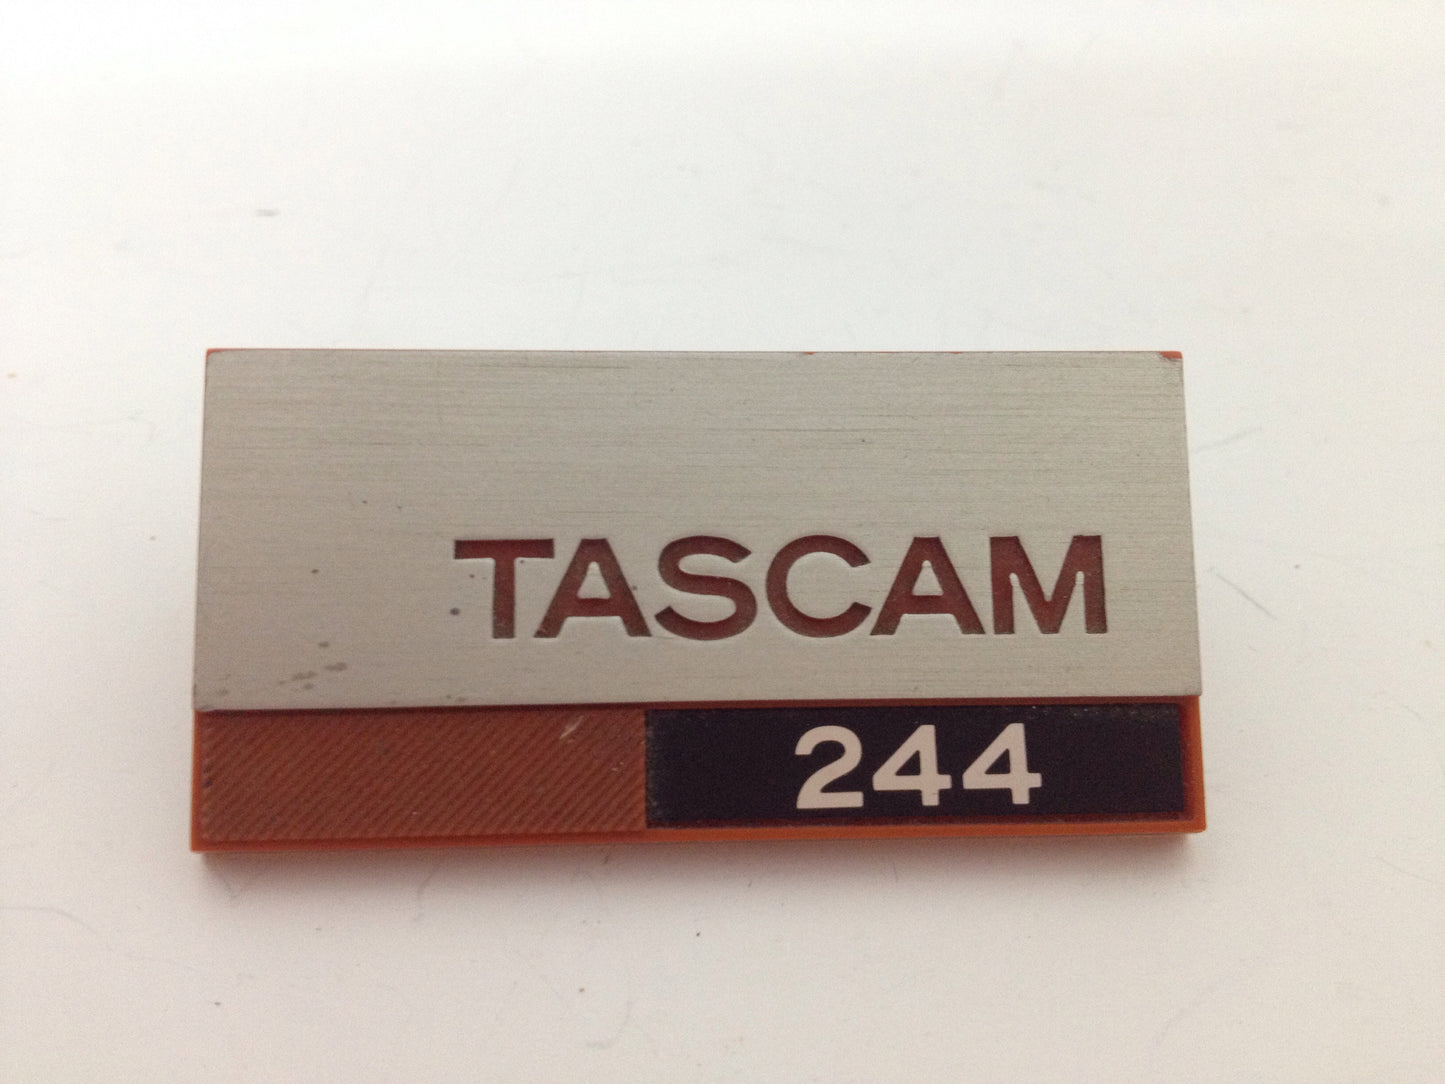 Tascam 244 badge